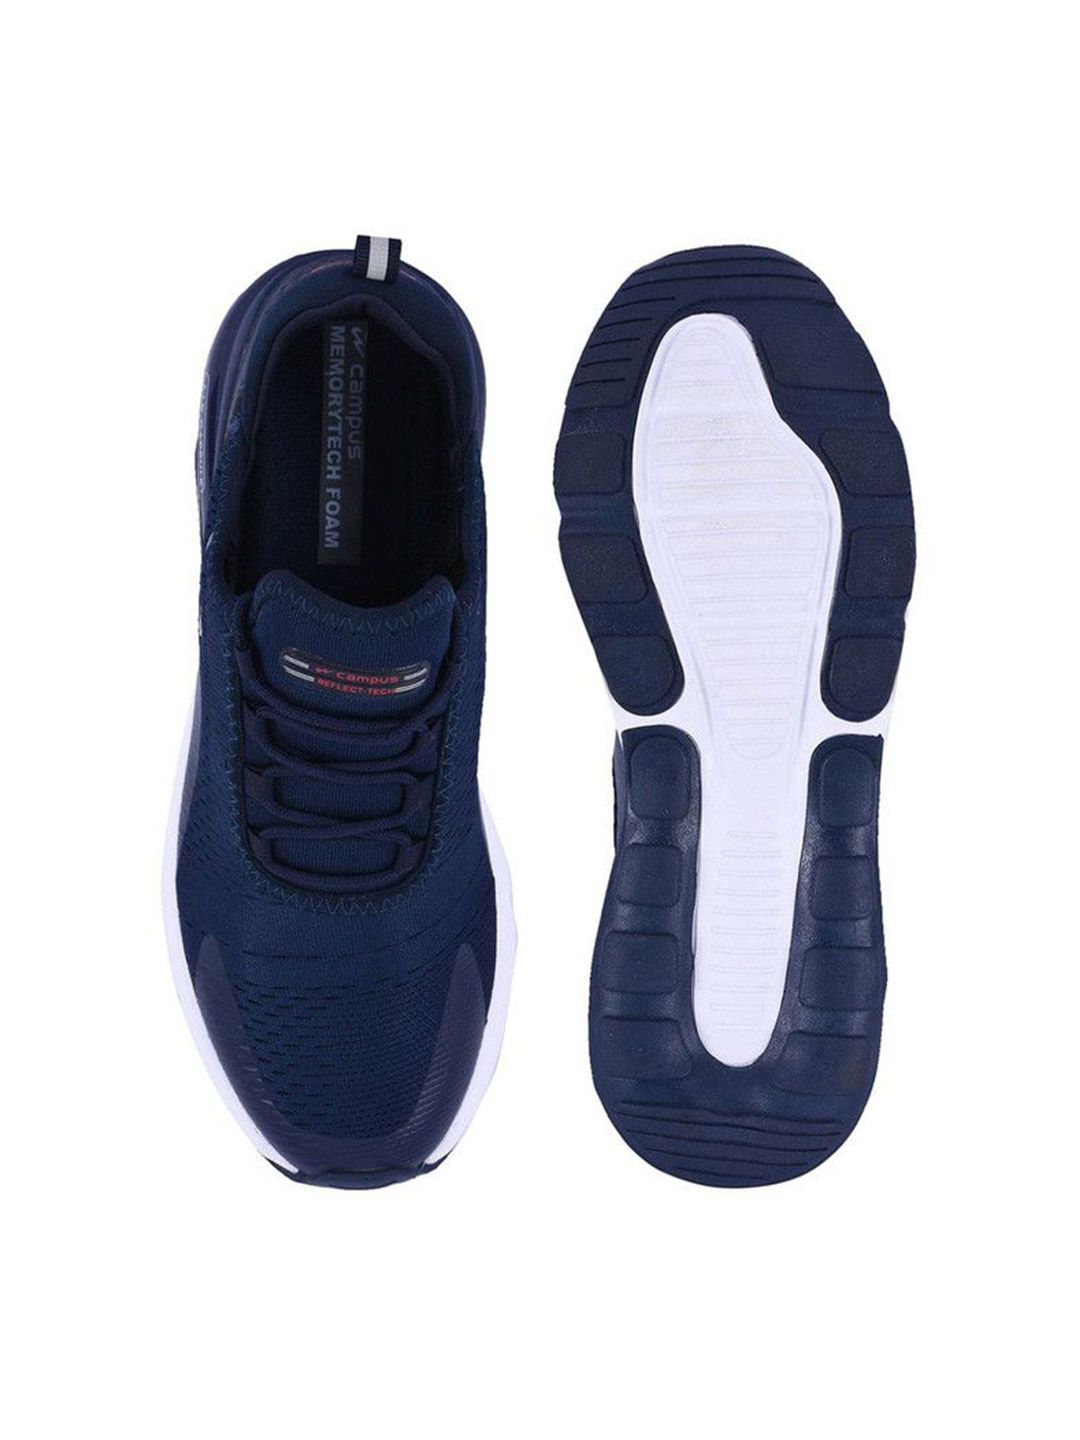 Buy Men Dragon Blue Running Shoes From Fancode Shop.